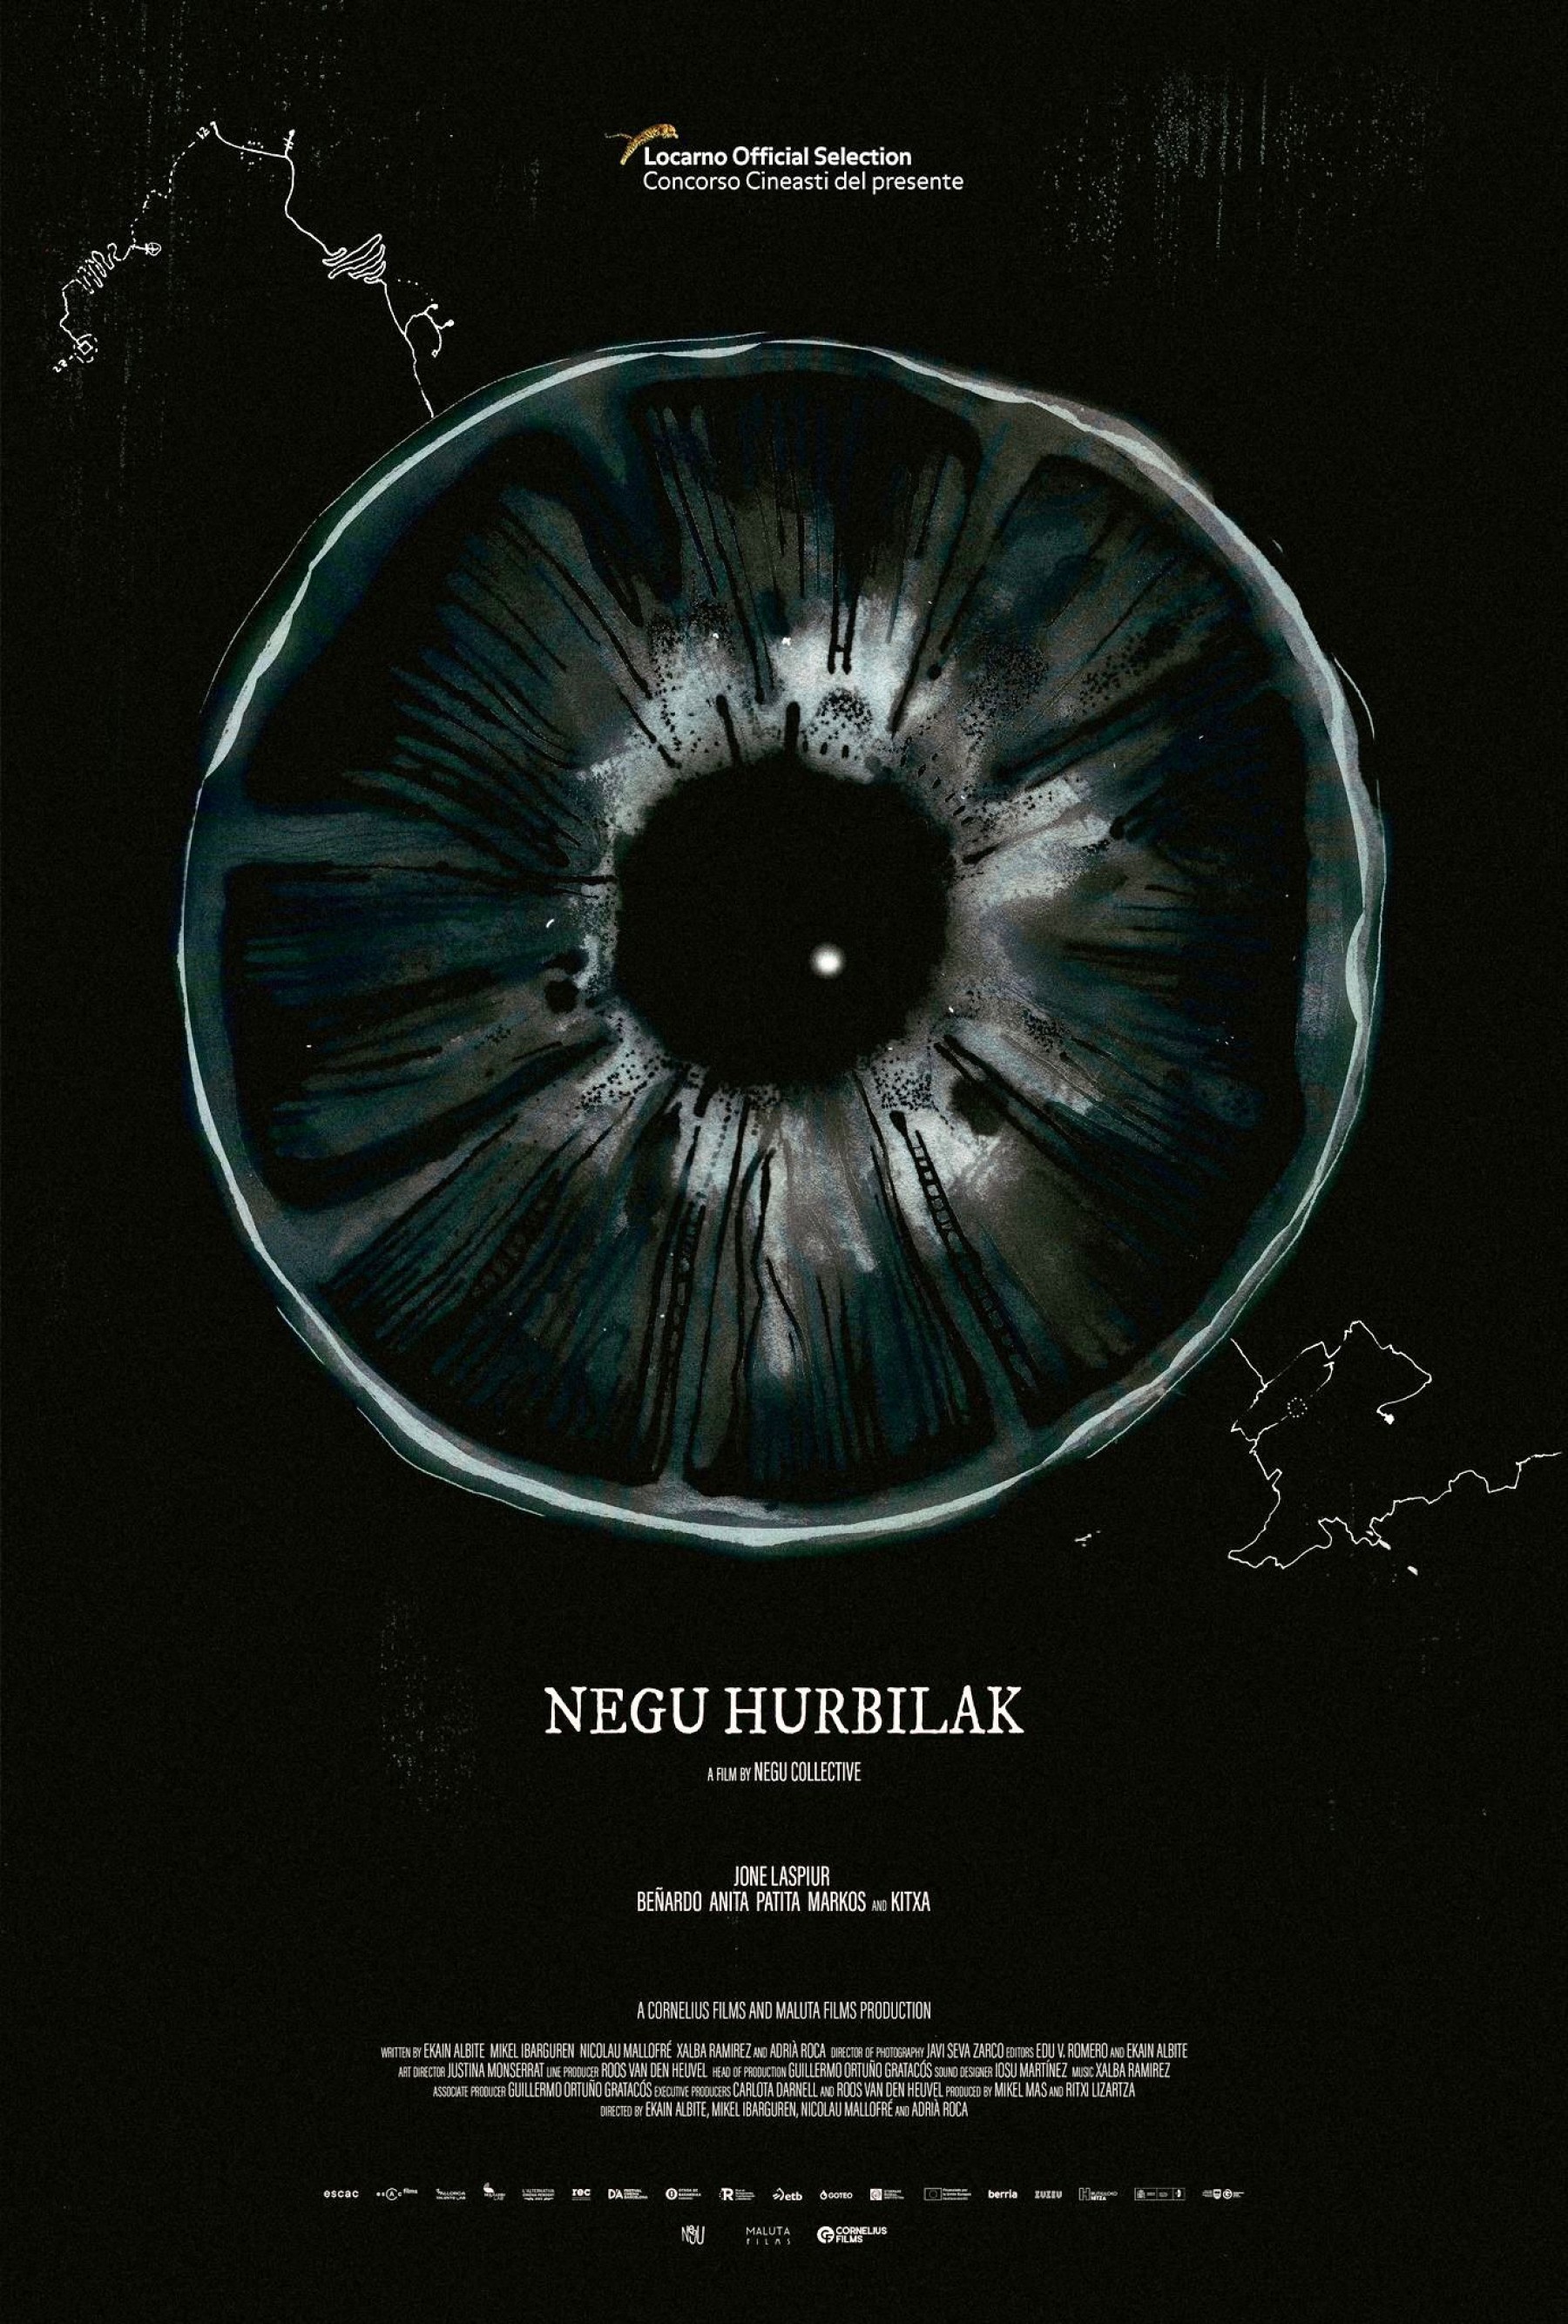 ‘Negu hurbilak’ will have its premiere at Locarno’s Cineasti del Presente competitive section!